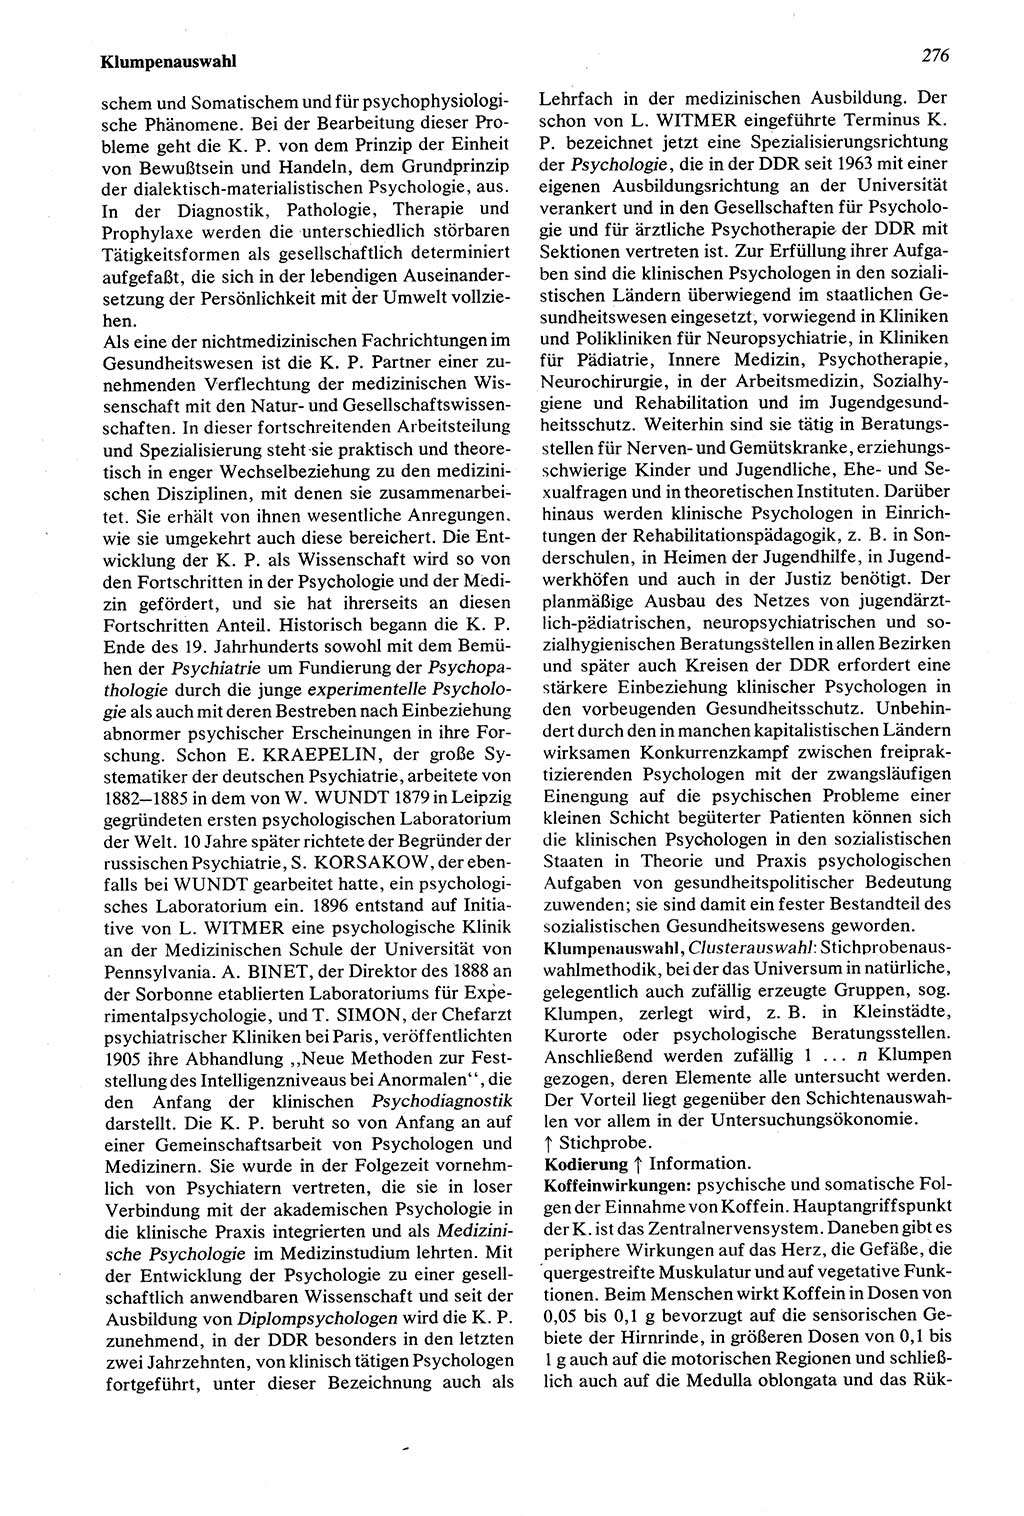 Wörterbuch der Psychologie [Deutsche Demokratische Republik (DDR)] 1976, Seite 276 (Wb. Psych. DDR 1976, S. 276)